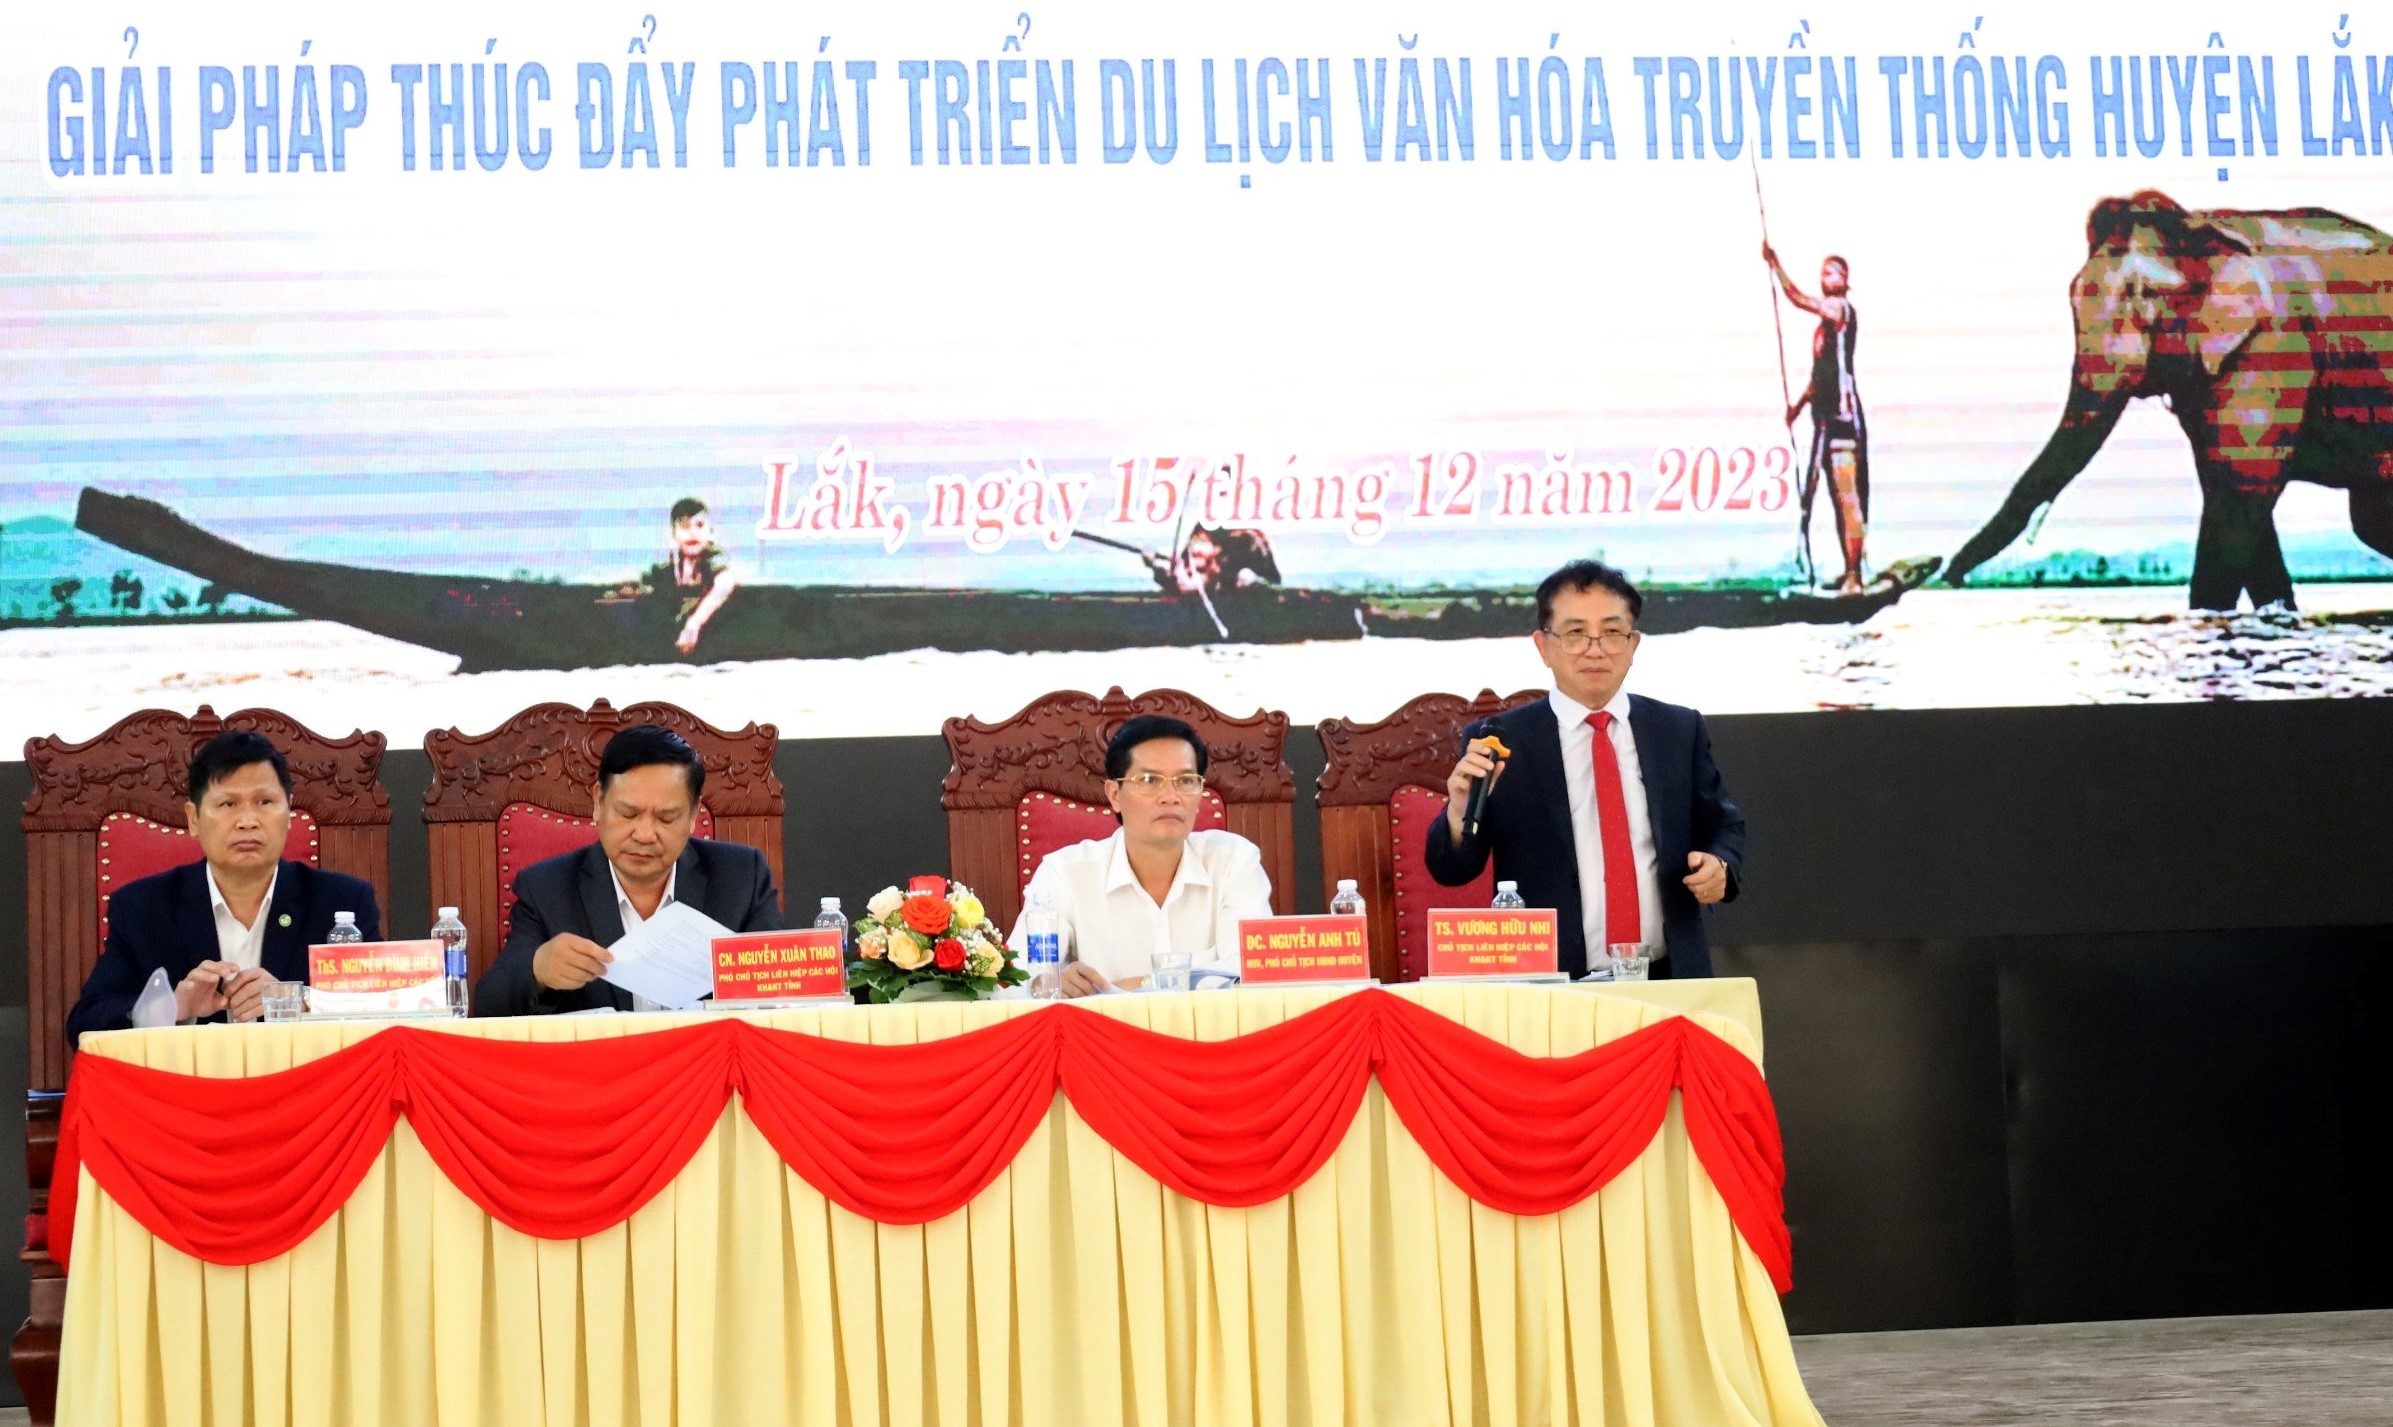 Hội thảo khoa học "Giải pháp thúc đẩy phát triển du lịch văn hóa truyền thống huyện Lắk"